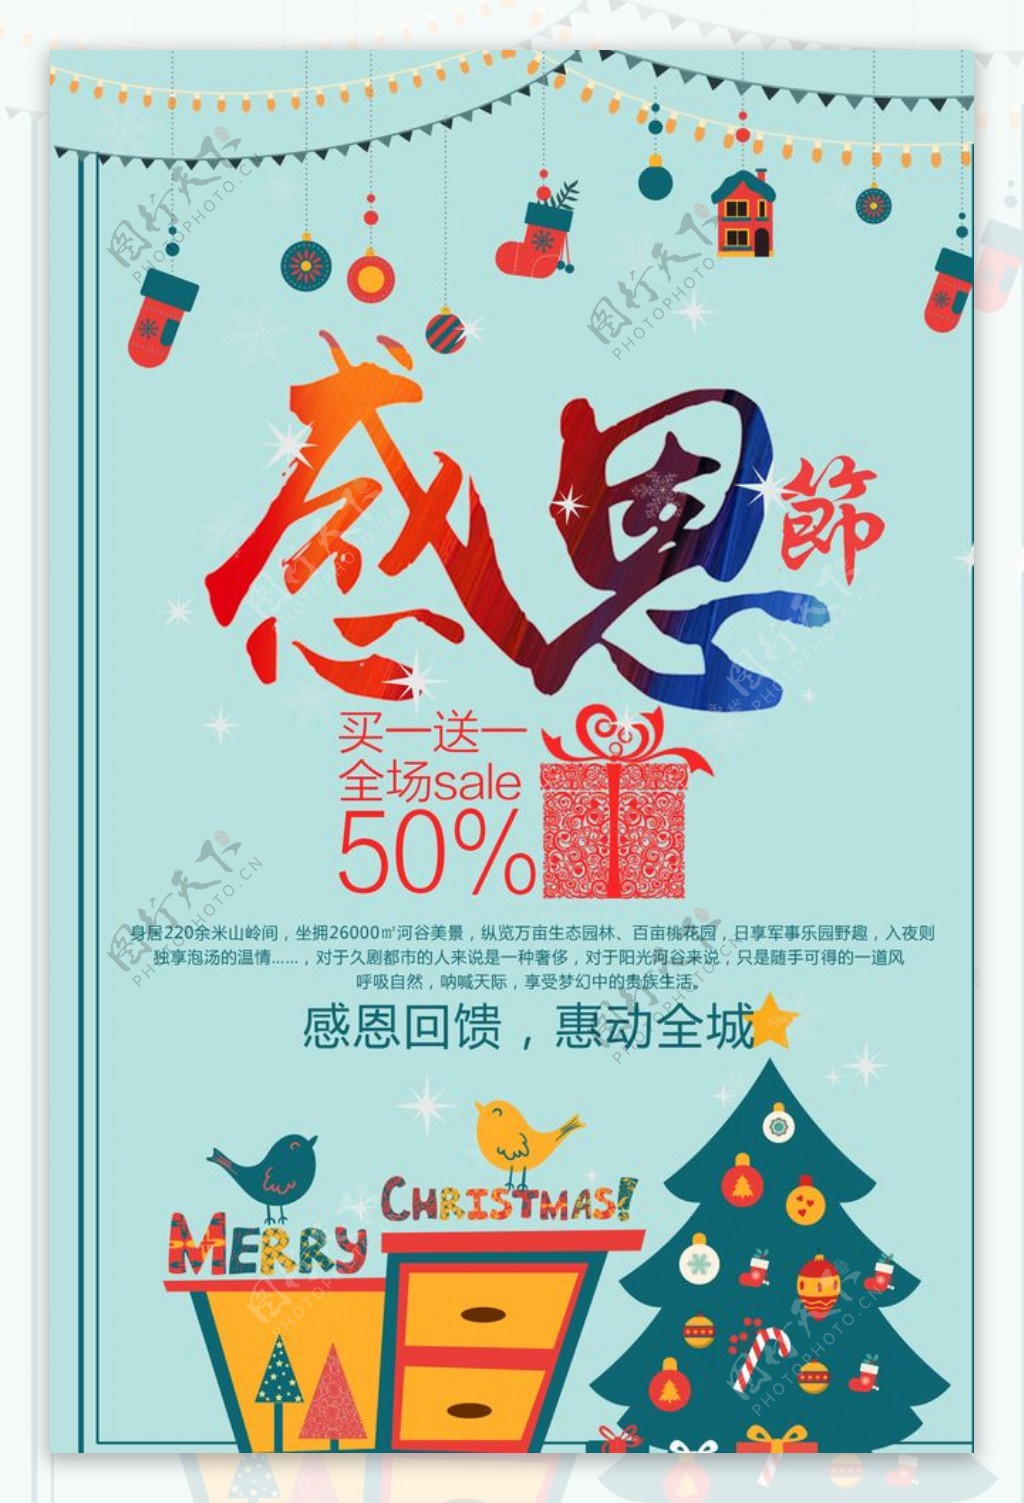 清新简约感恩节促销海报